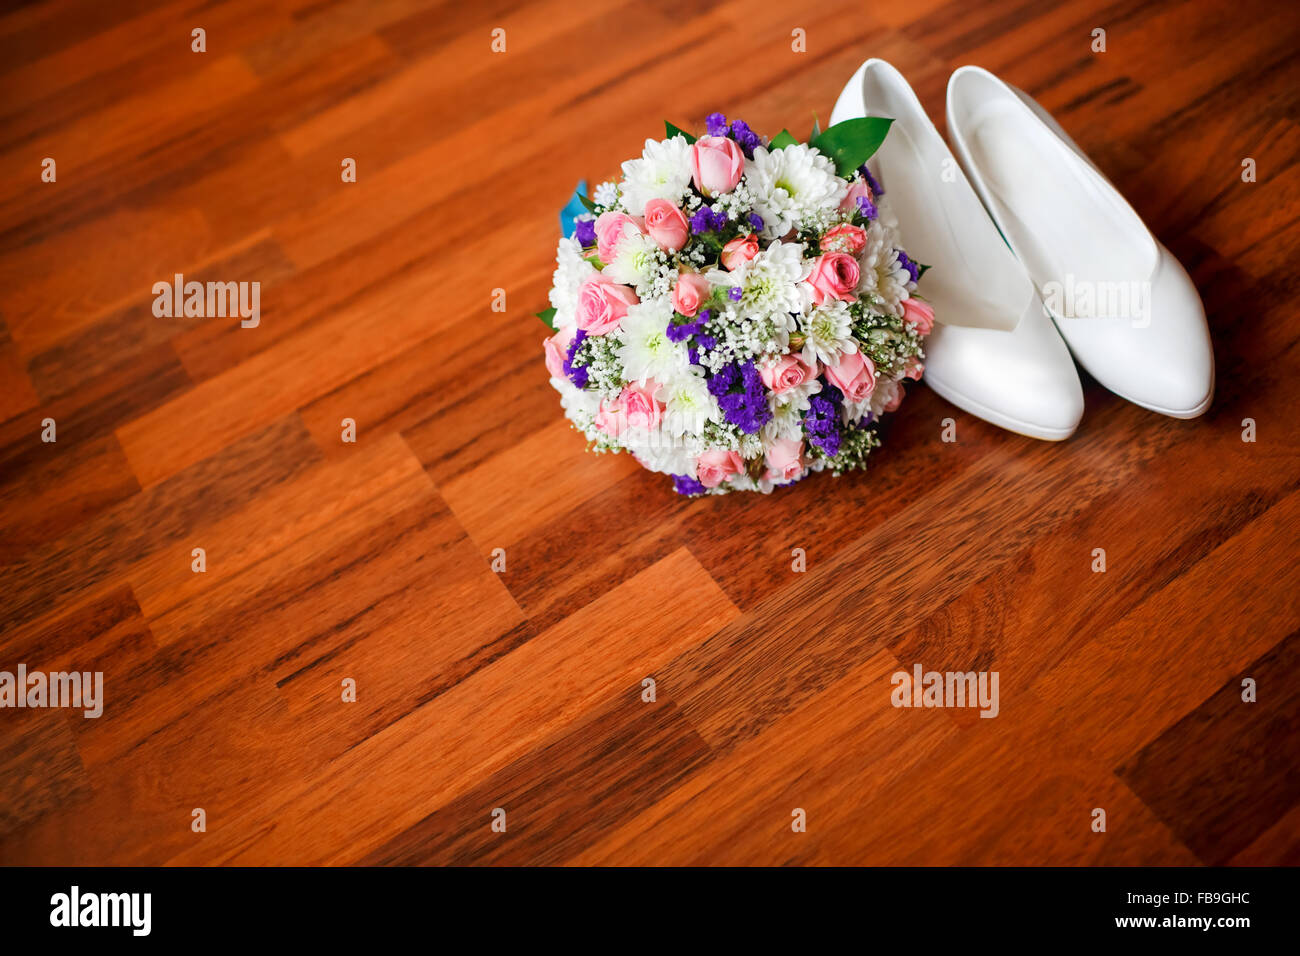 Bouquet nozze con fiori viola e bianco della sposa scarpe matrimonio sul pavimento in parquet, camera per copia. Accessori per la sposa. Foto Stock